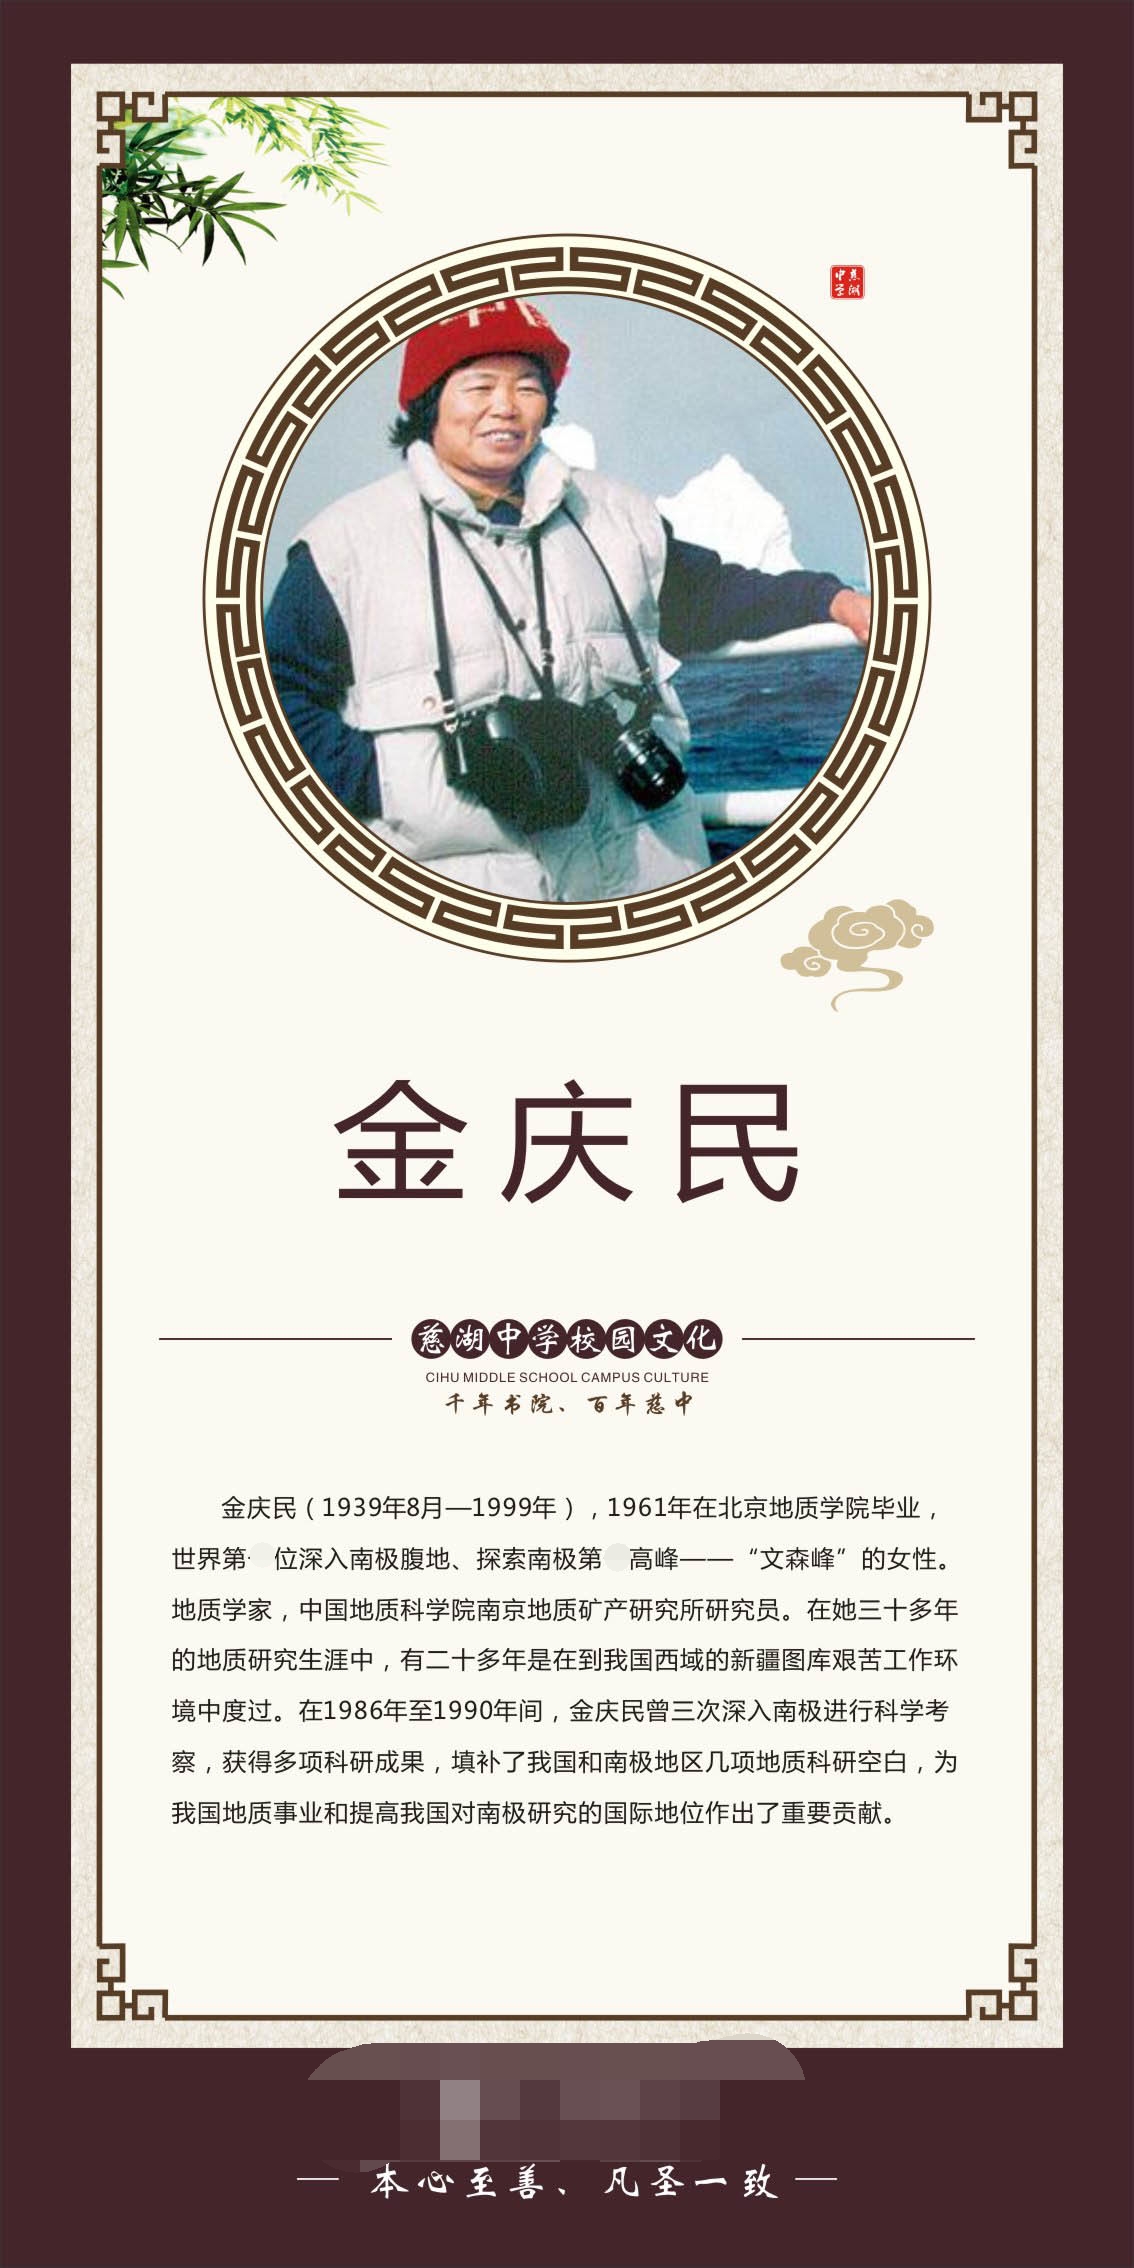 735画布海报展板喷绘素材贴纸726校园文化文学家挂图金庆民